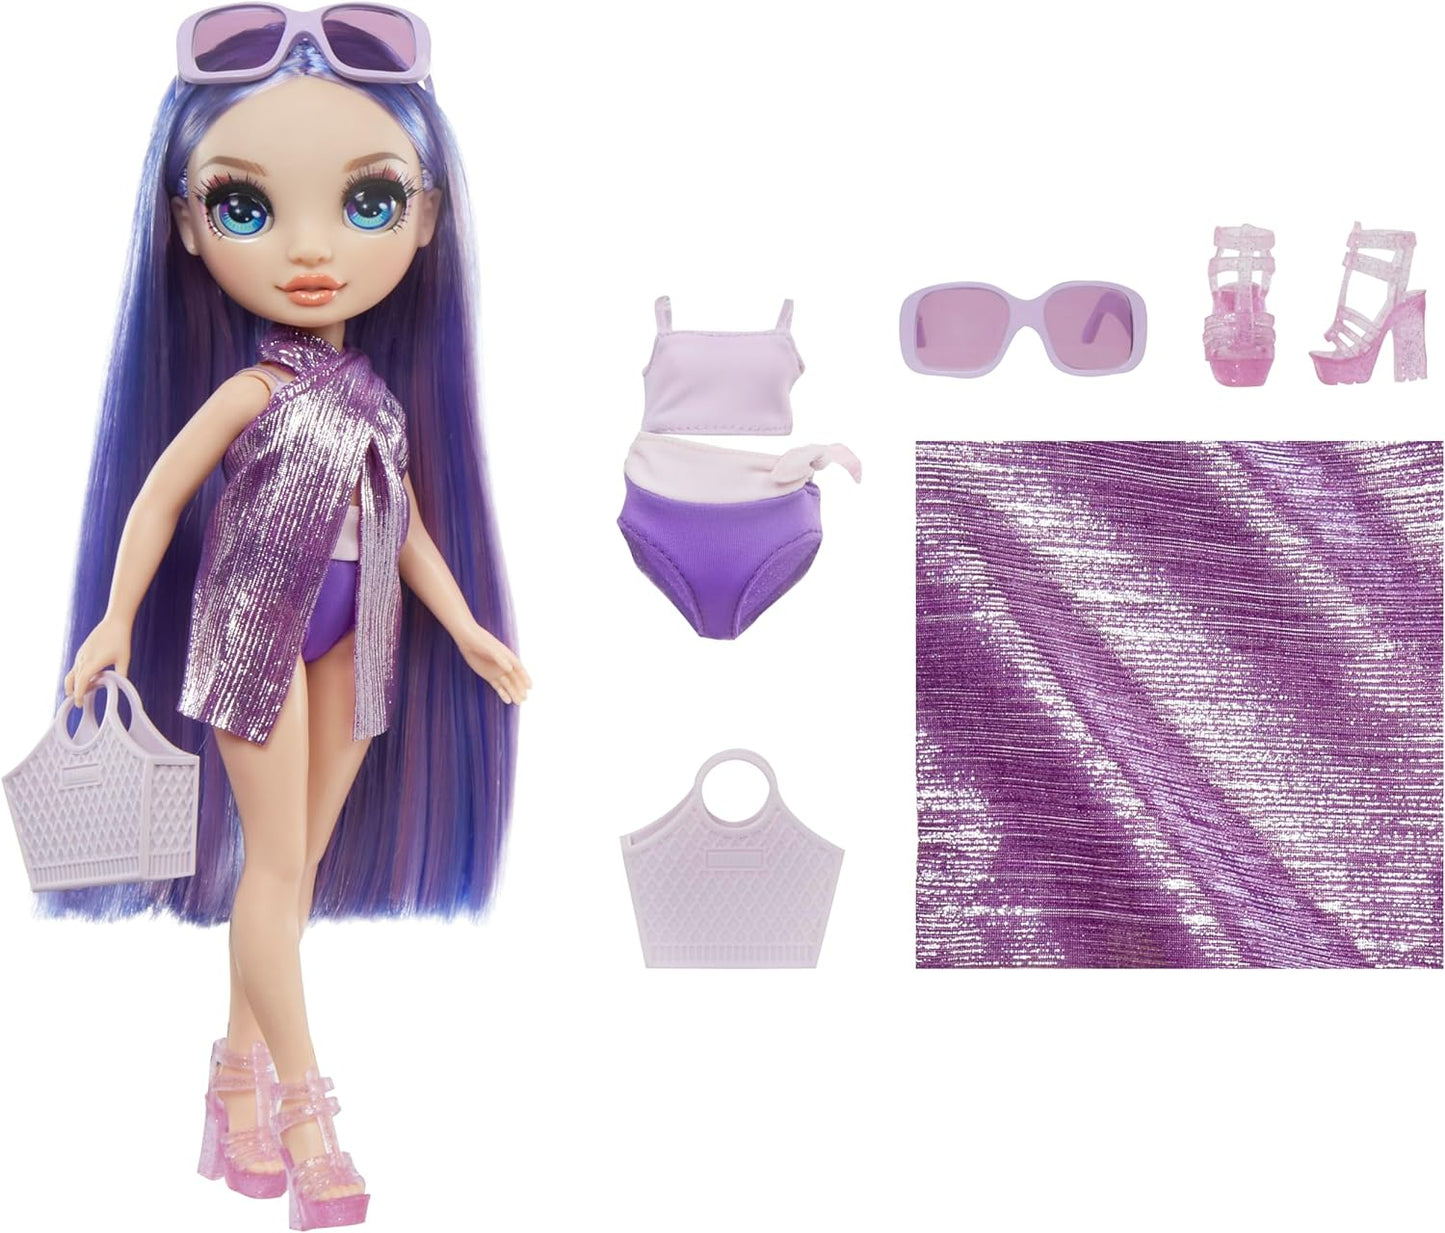 Rainbow High Swim & Style – Violeta (roxo) – Boneca de 28 cm com envoltório cintilante para estilizar mais de 10 maneiras – Maiô removível, sandálias, acessórios divertidos para brincar – Brinquedo infantil – Ótimo para idades de 4 a 12 anos